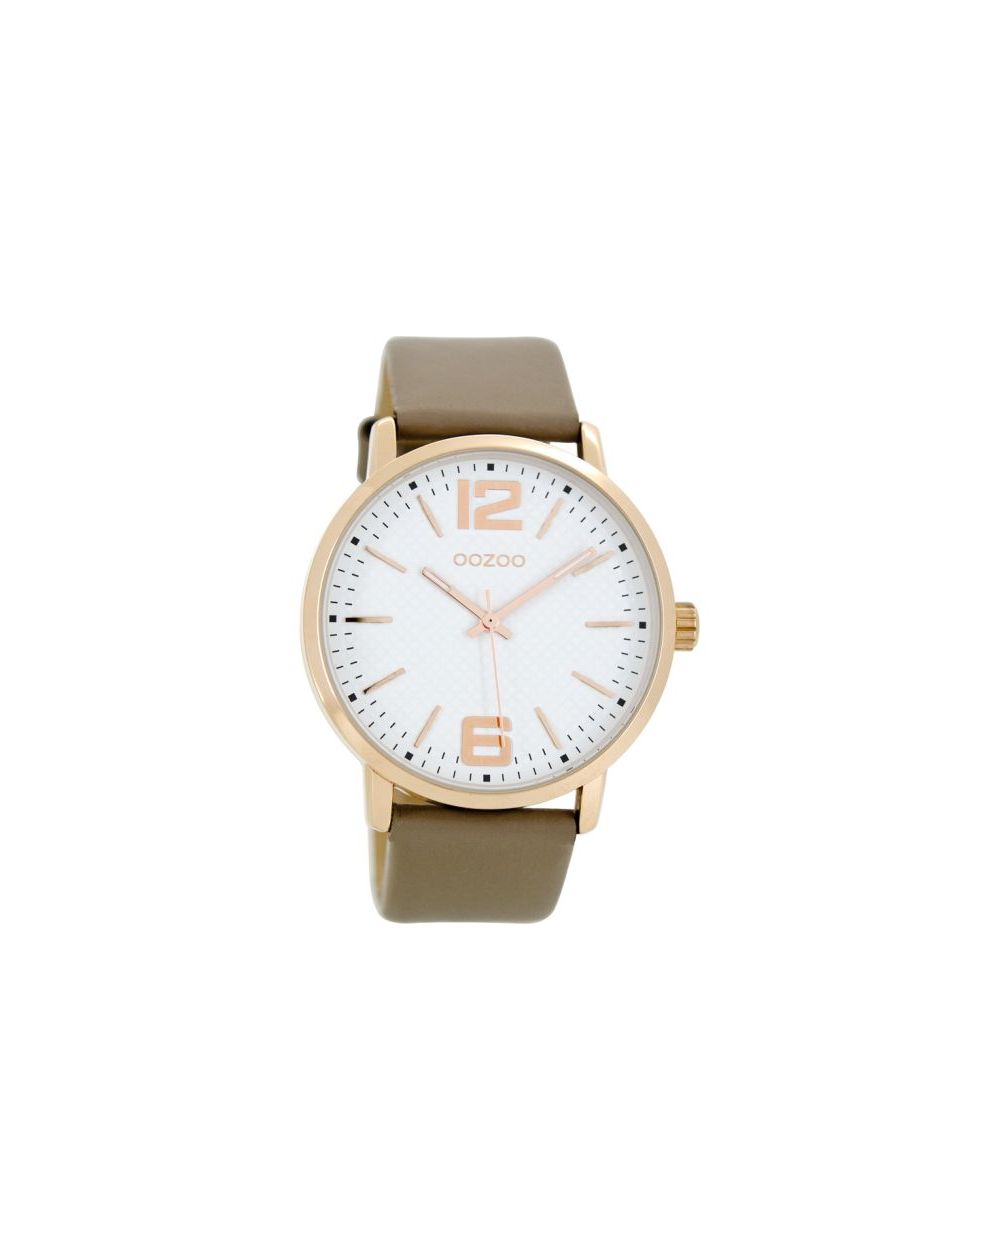 Oozoo montre/watch/horloge C8506